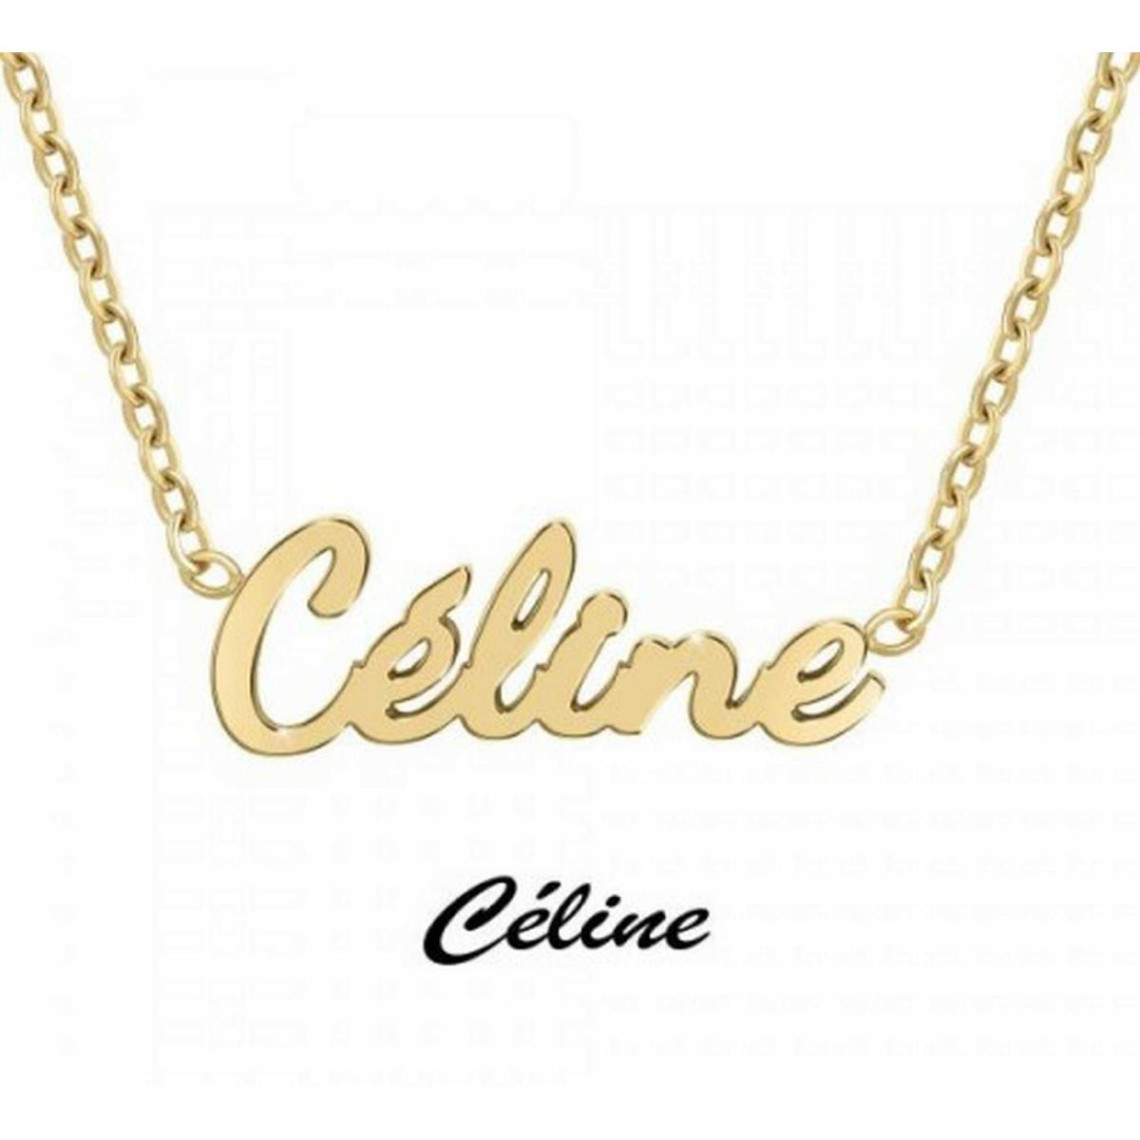 Collier Athème Femme - B2689-DORE-CELINE